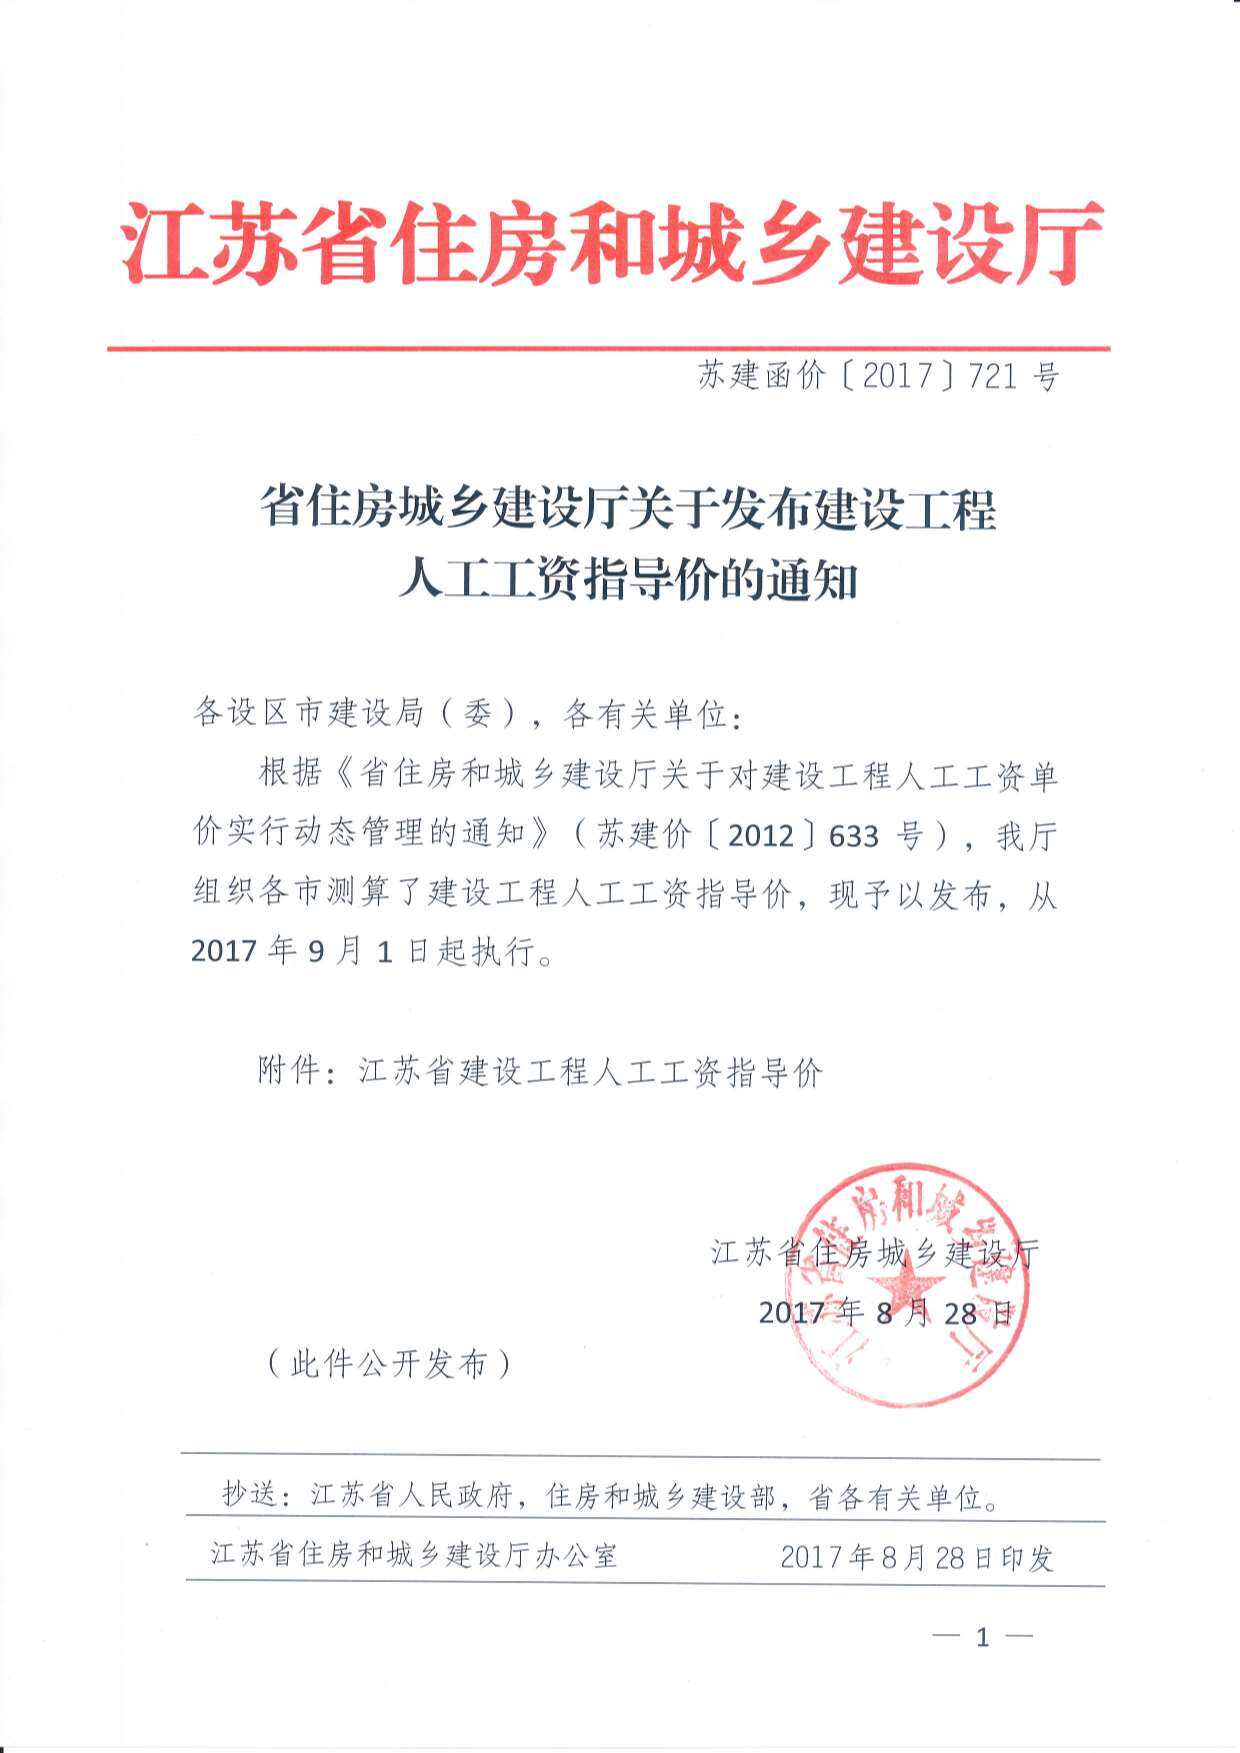 2017年9月1日江苏省建设工程人工工资指导价